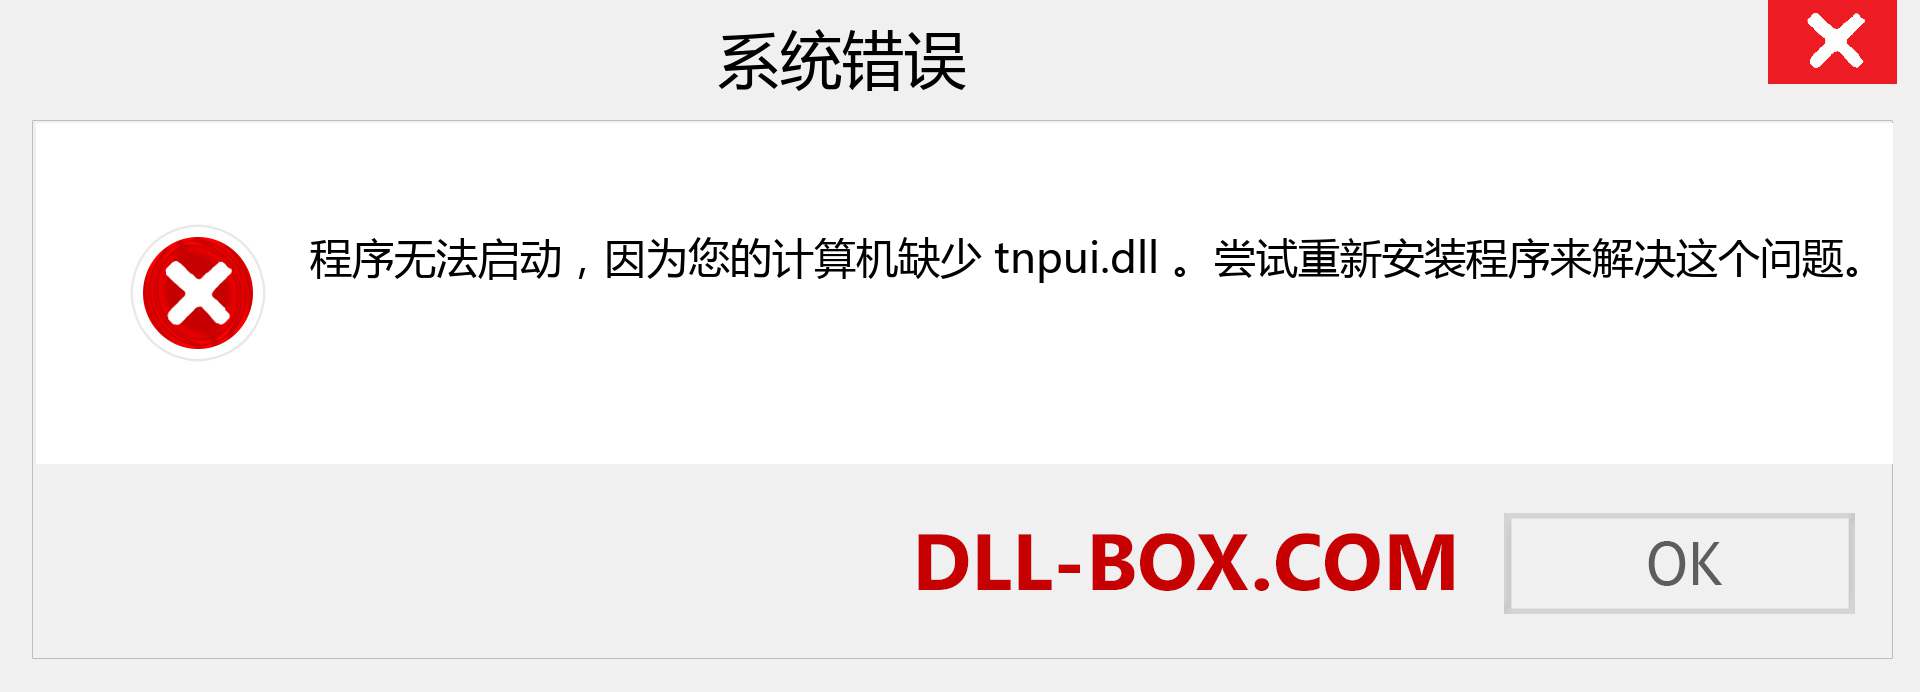 tnpui.dll 文件丢失？。 适用于 Windows 7、8、10 的下载 - 修复 Windows、照片、图像上的 tnpui dll 丢失错误